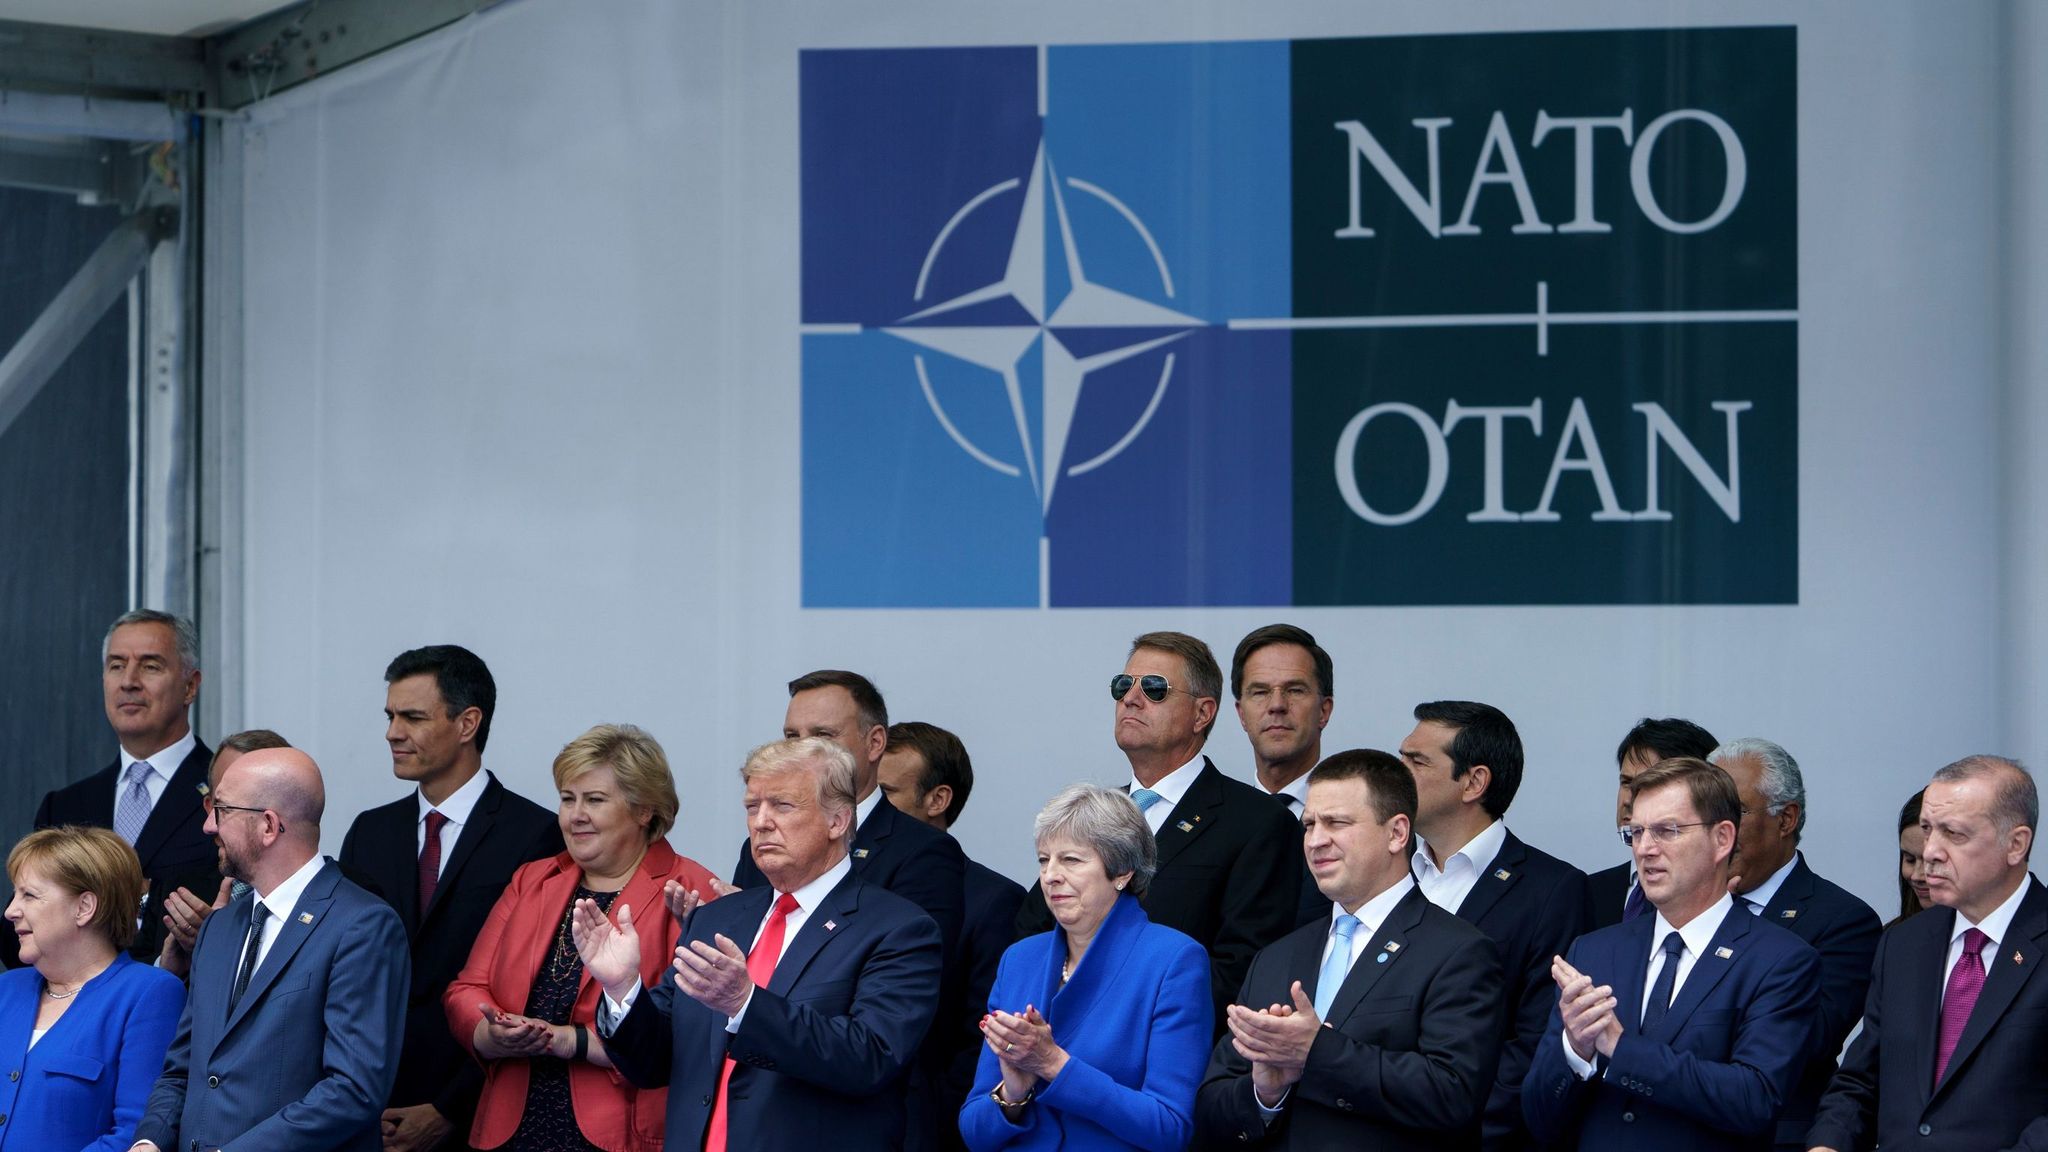 Нато коррупция. NATO OTAN. Саммит НАТО фото участников. NATO leaders. ООН И НАТО саммиты.